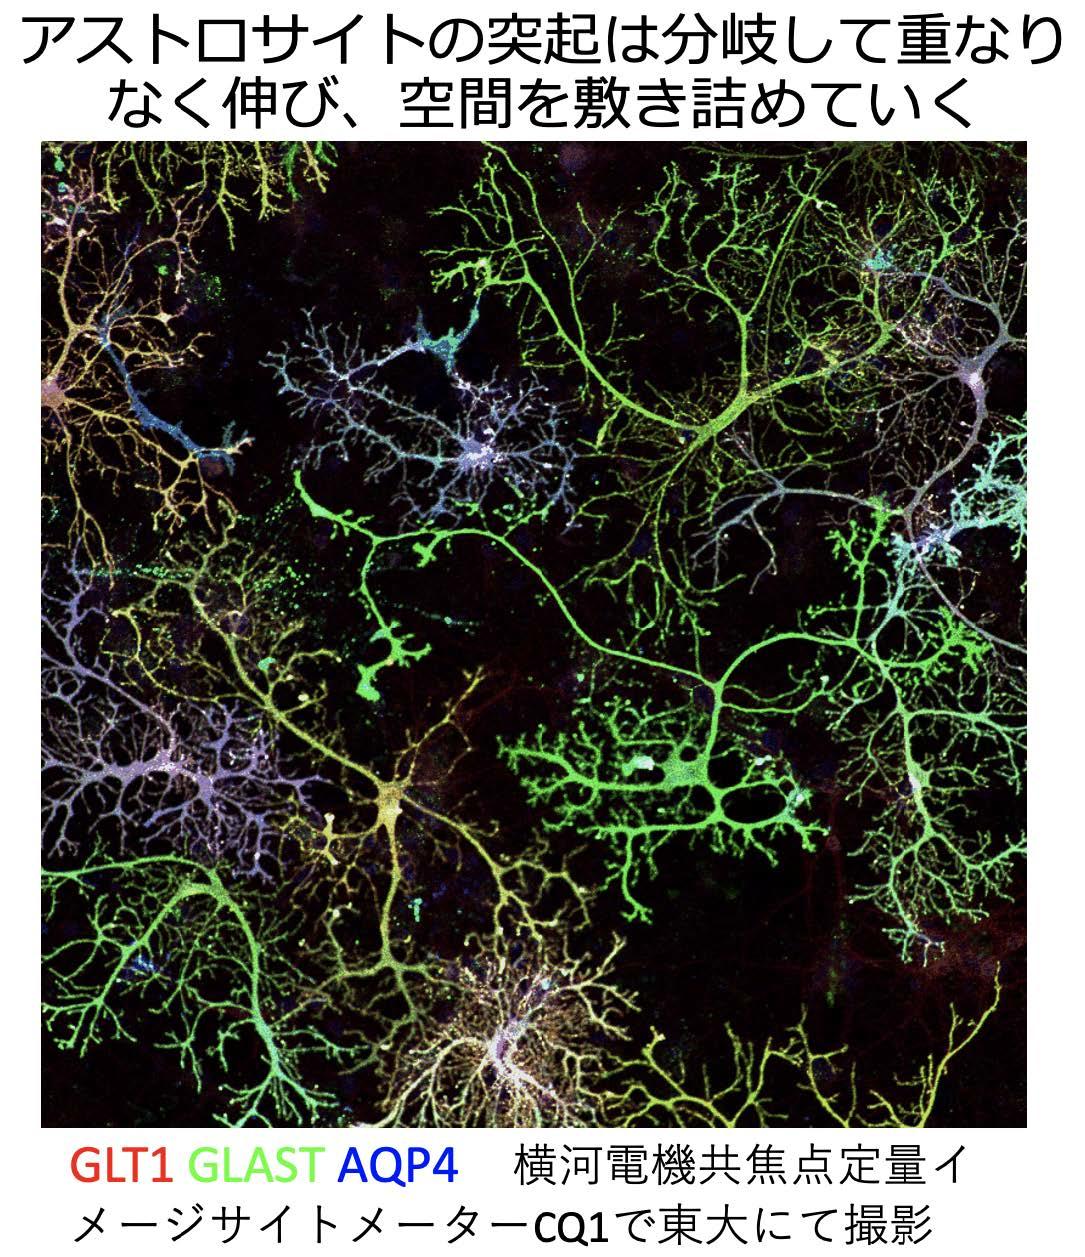 神経細胞への栄養輸送に関わるアストロサイトの分岐形成過程を明らかに -- 昭和女子大学